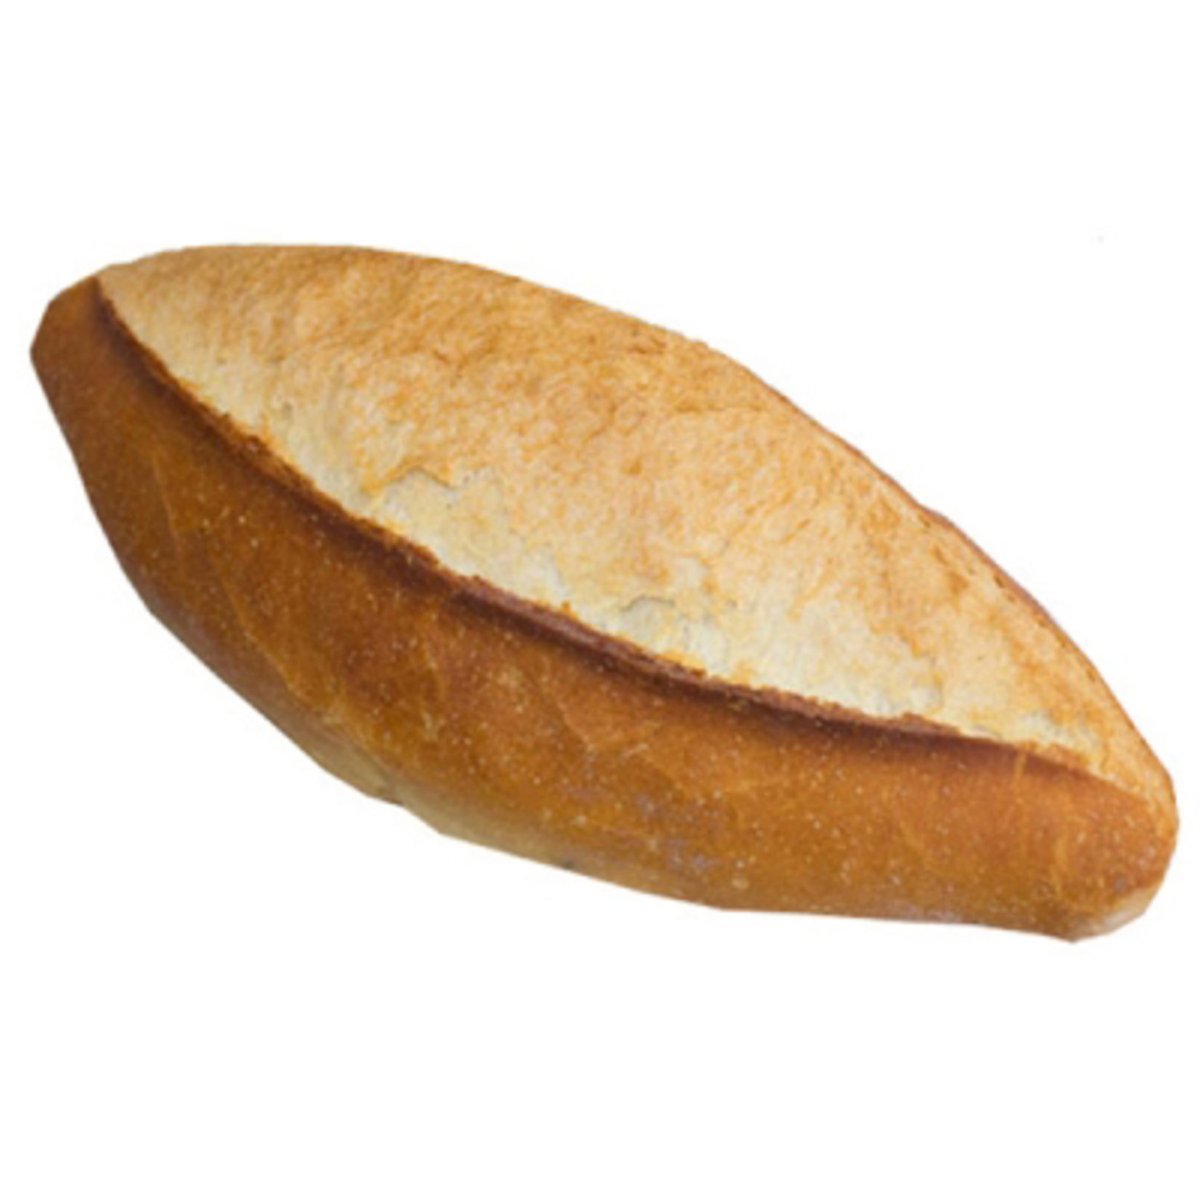 Millet ekmeği 5 liraya yiyorsa senin hakkında unutulmayacak Sadi Güven https://t.co/0w5uRNerIr